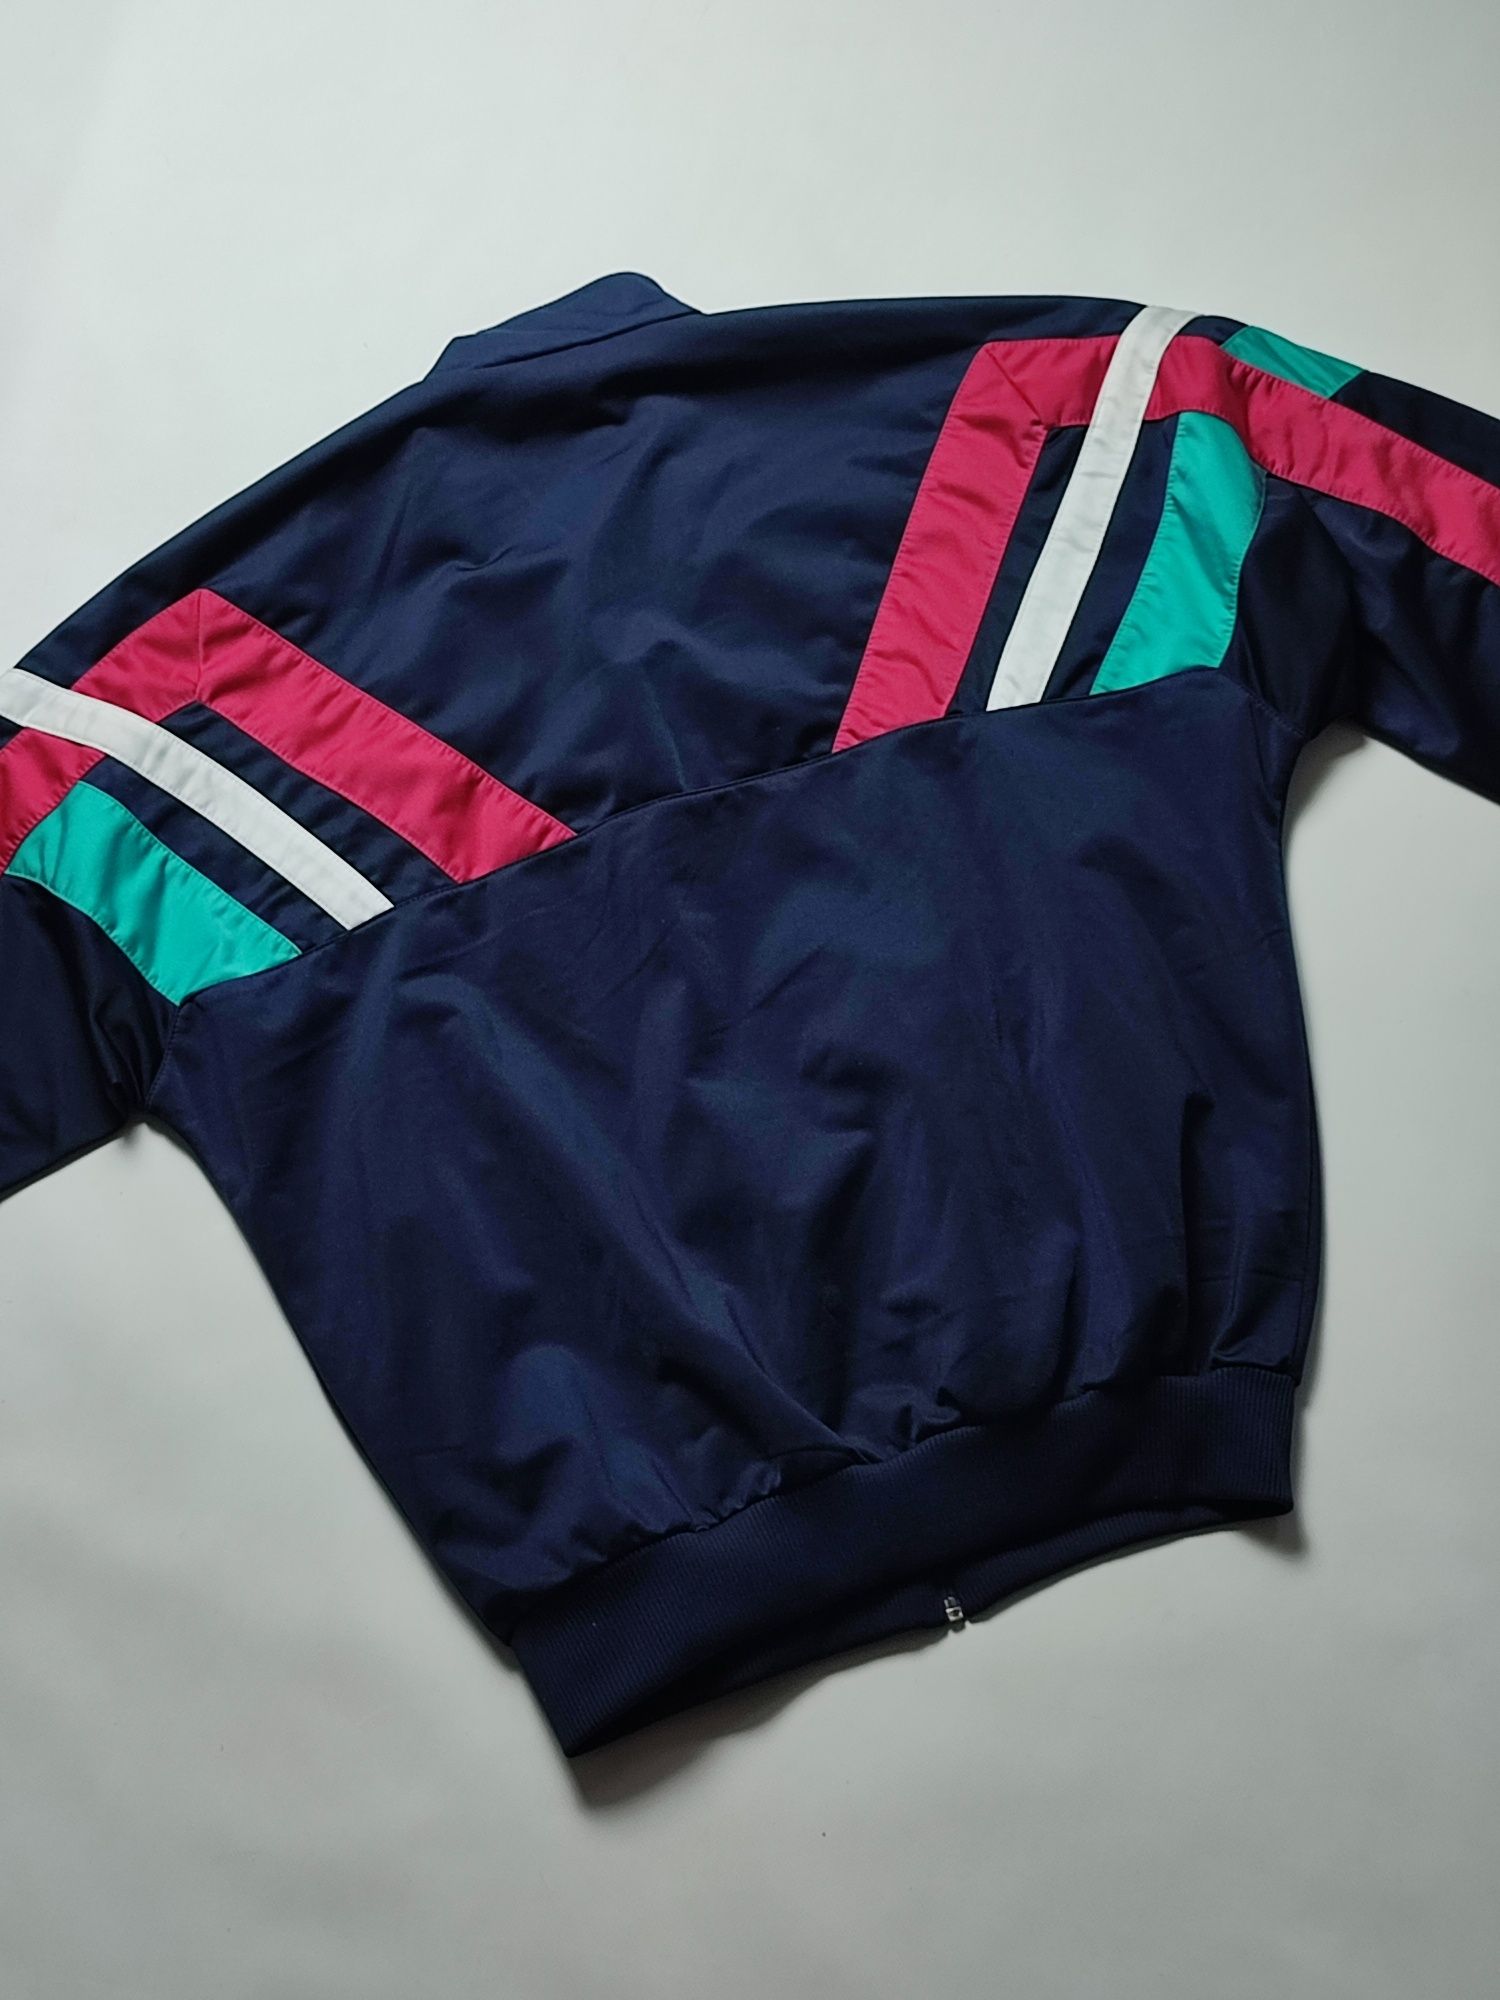 Спортивный костюм винтажный Adidas  EUR L (р.48-50)бу ориг 90х мужской